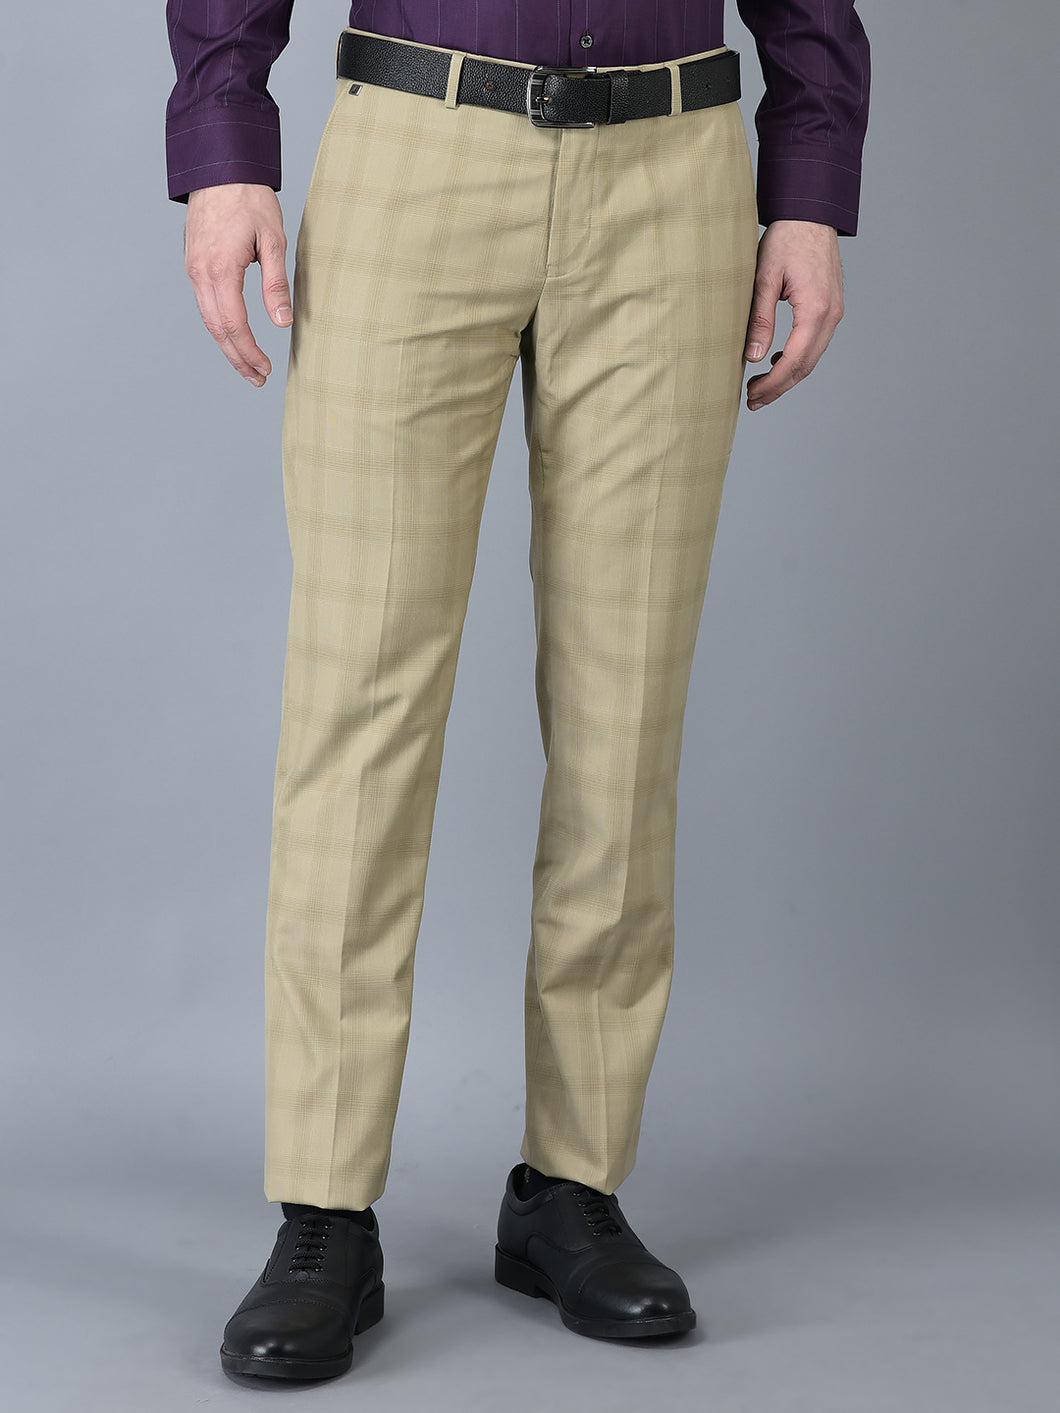 CANOE MEN Formal Trouser  BEIGE Color